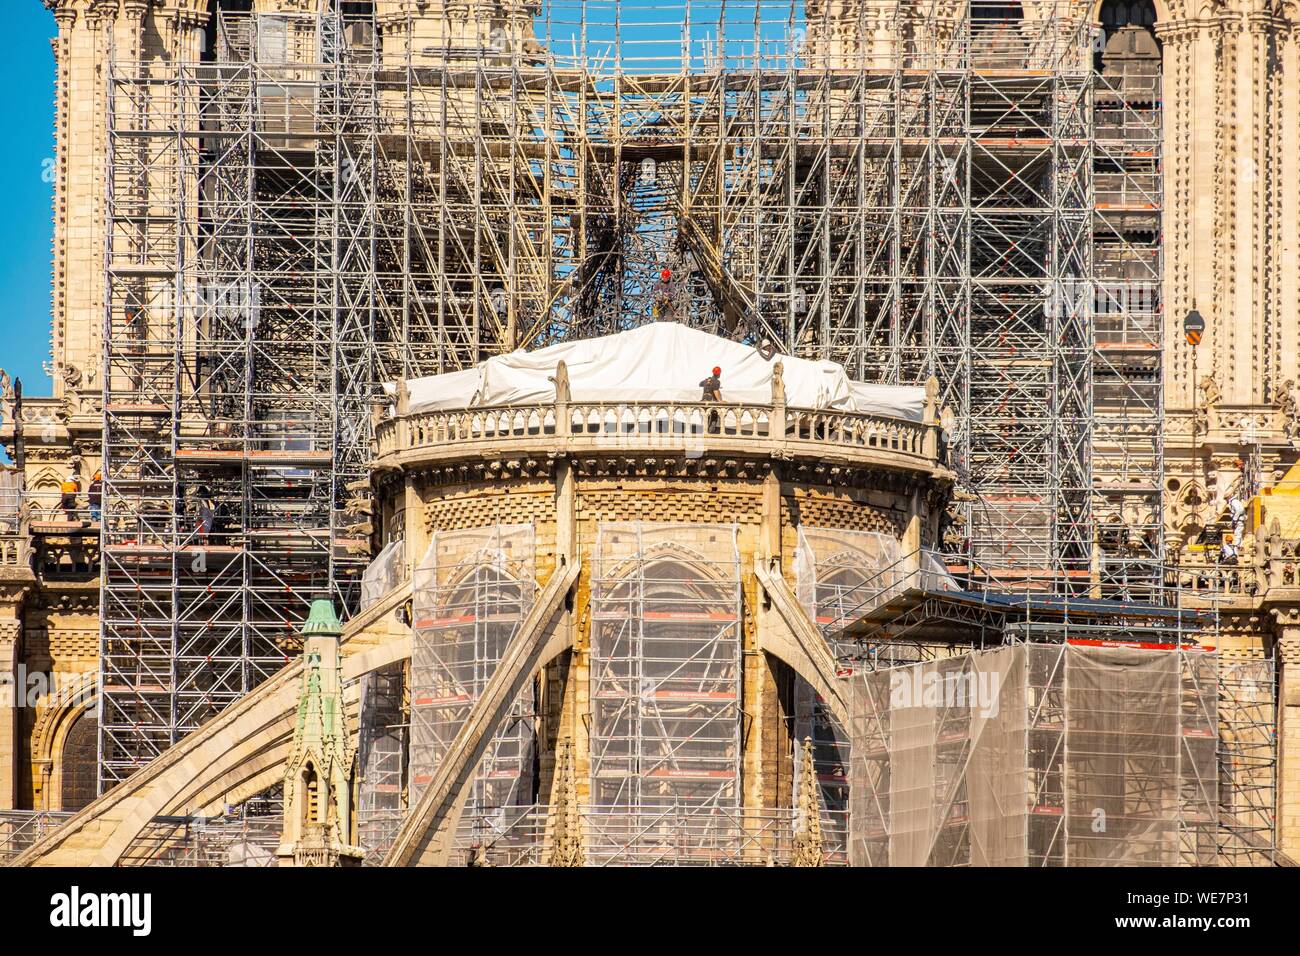 Francia, Parigi, zona elencata come patrimonio mondiale dall' UNESCO, Ile de la Cite, la cattedrale di Notre Dame de Paris, lavori di consolidamento dopo l'incendio del tetto Foto Stock